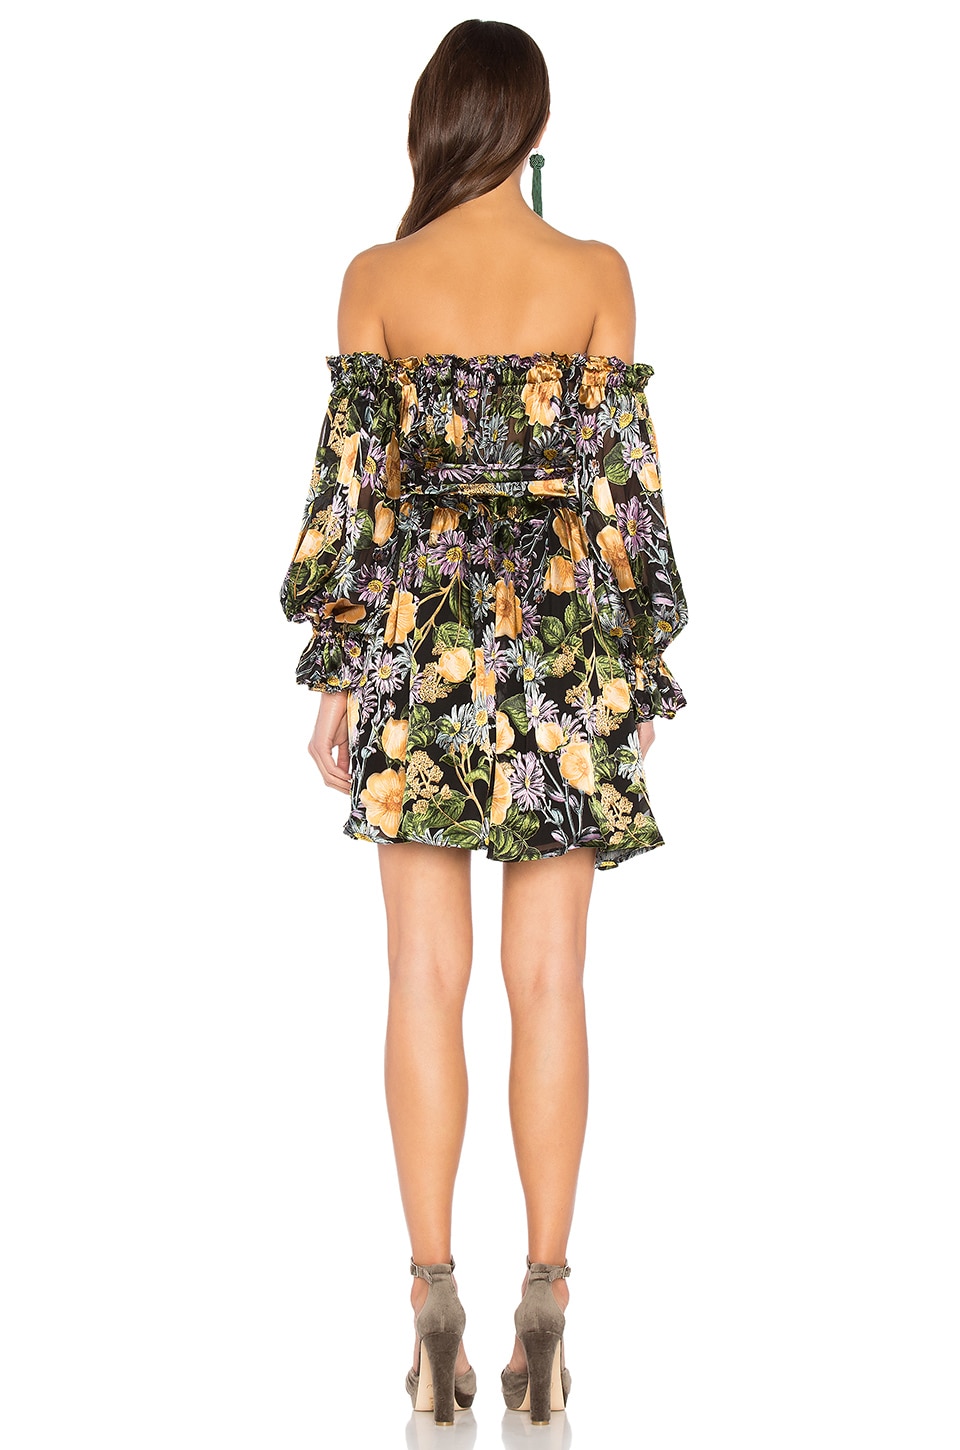 FOR LOVE & LEMONS Luciana Strapless Dress in Black Floral | ModeSens